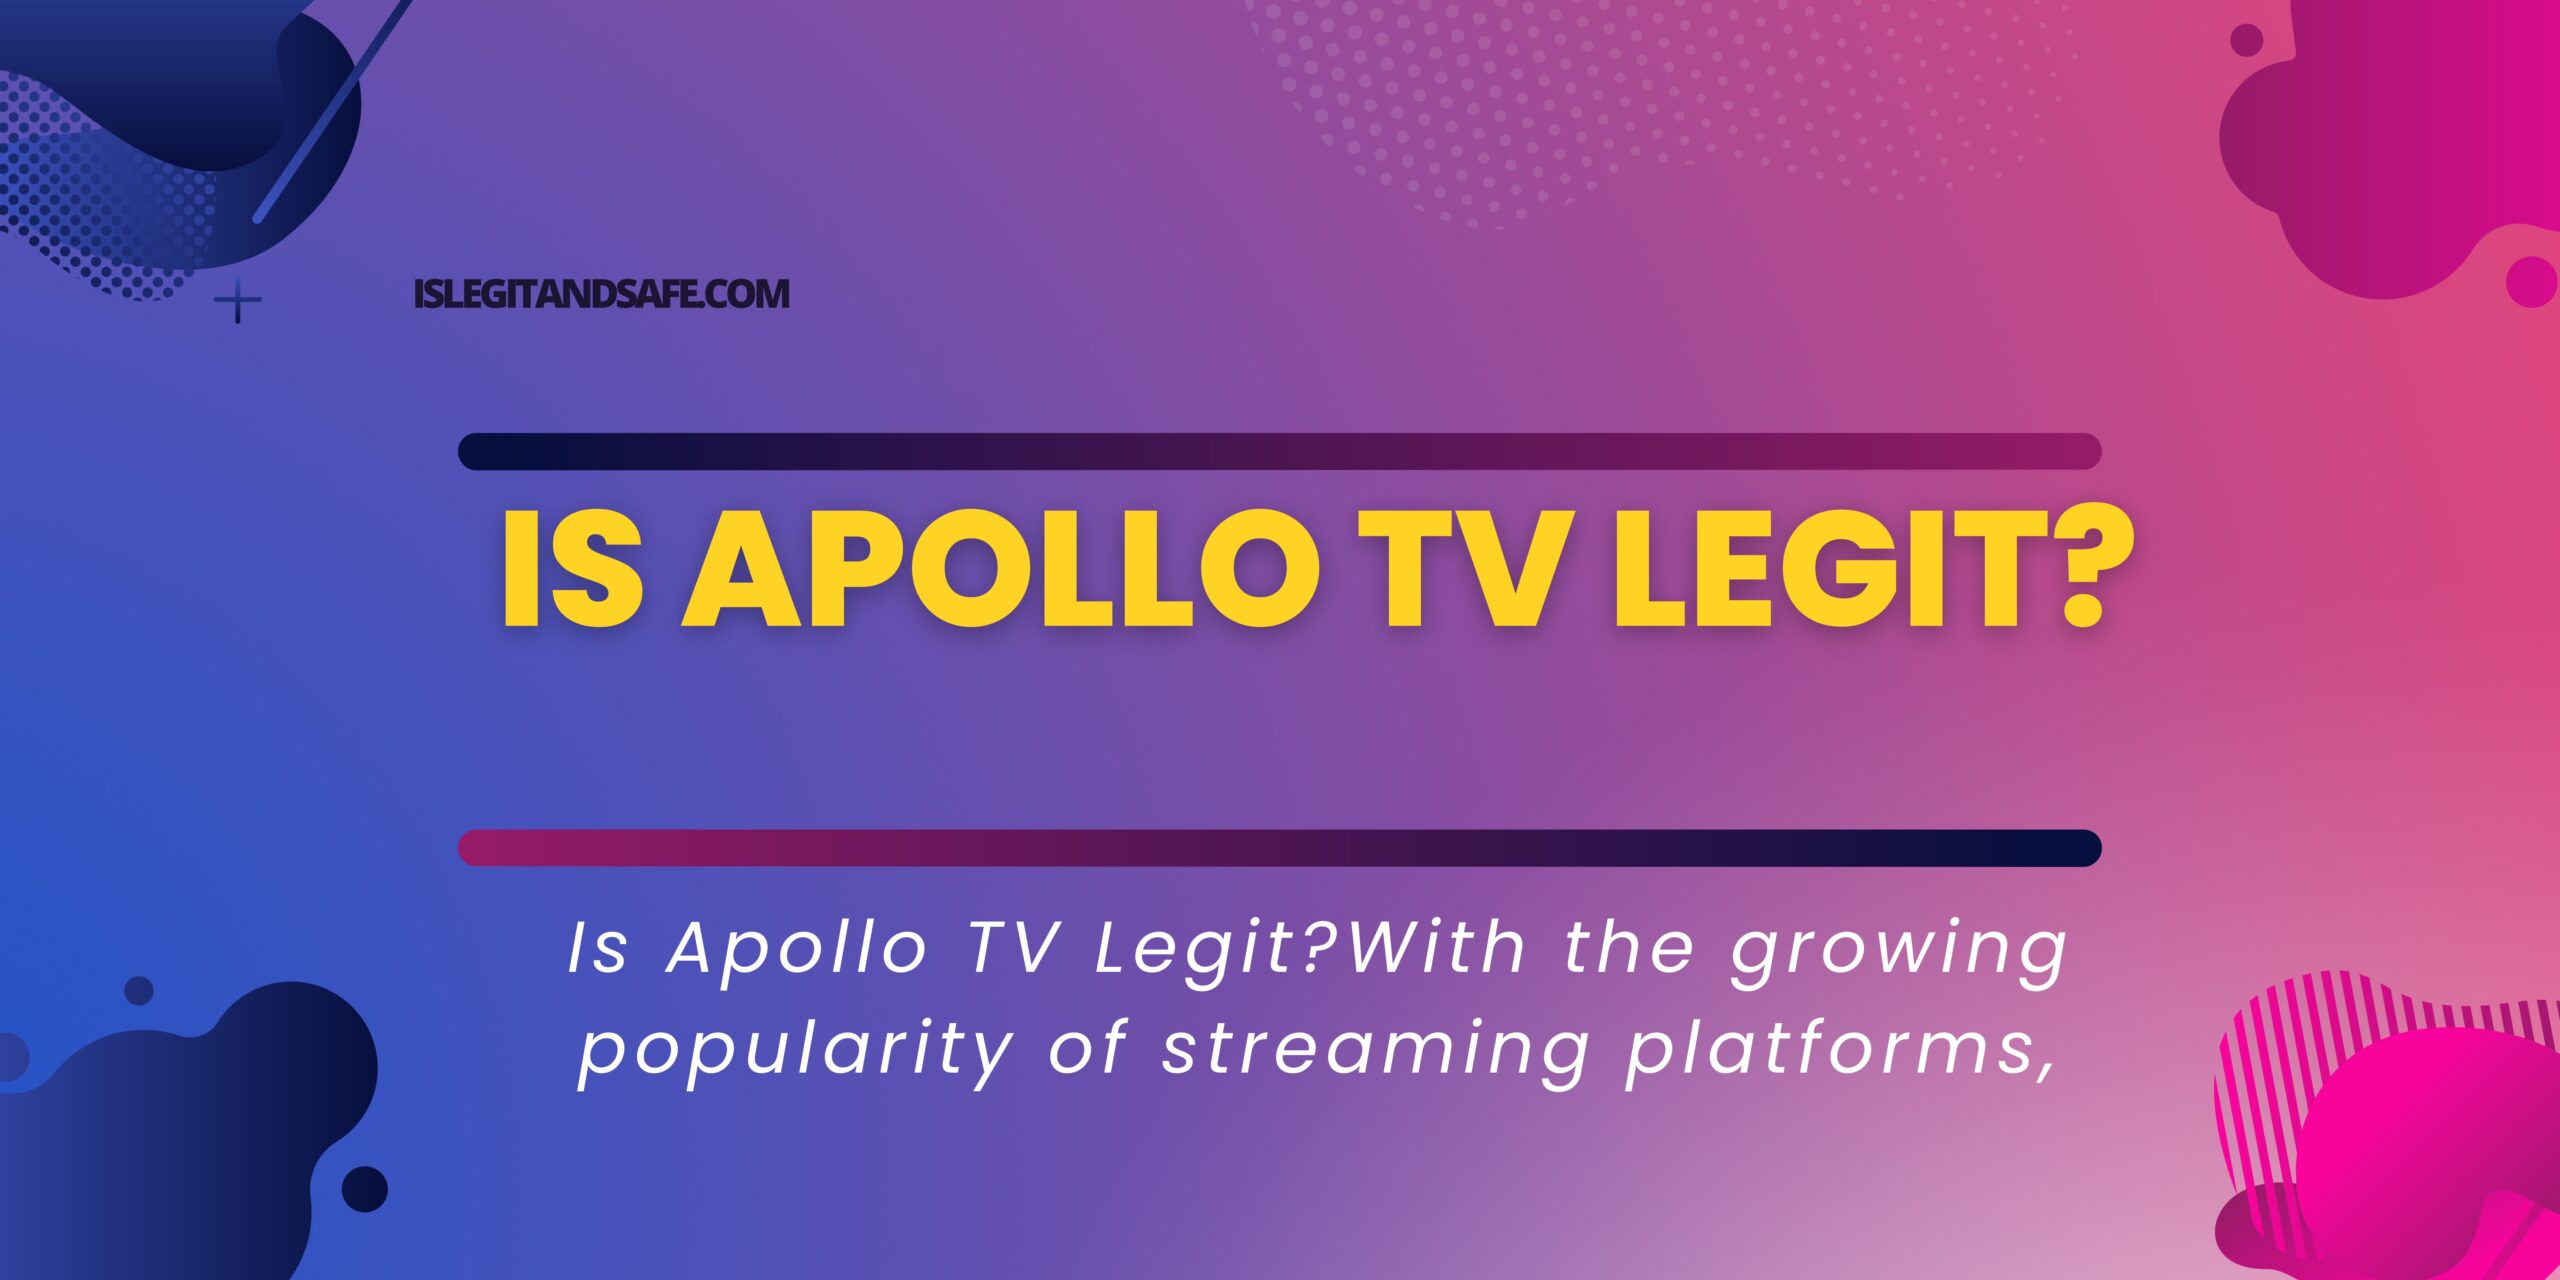 Is Apollo TV Legit?